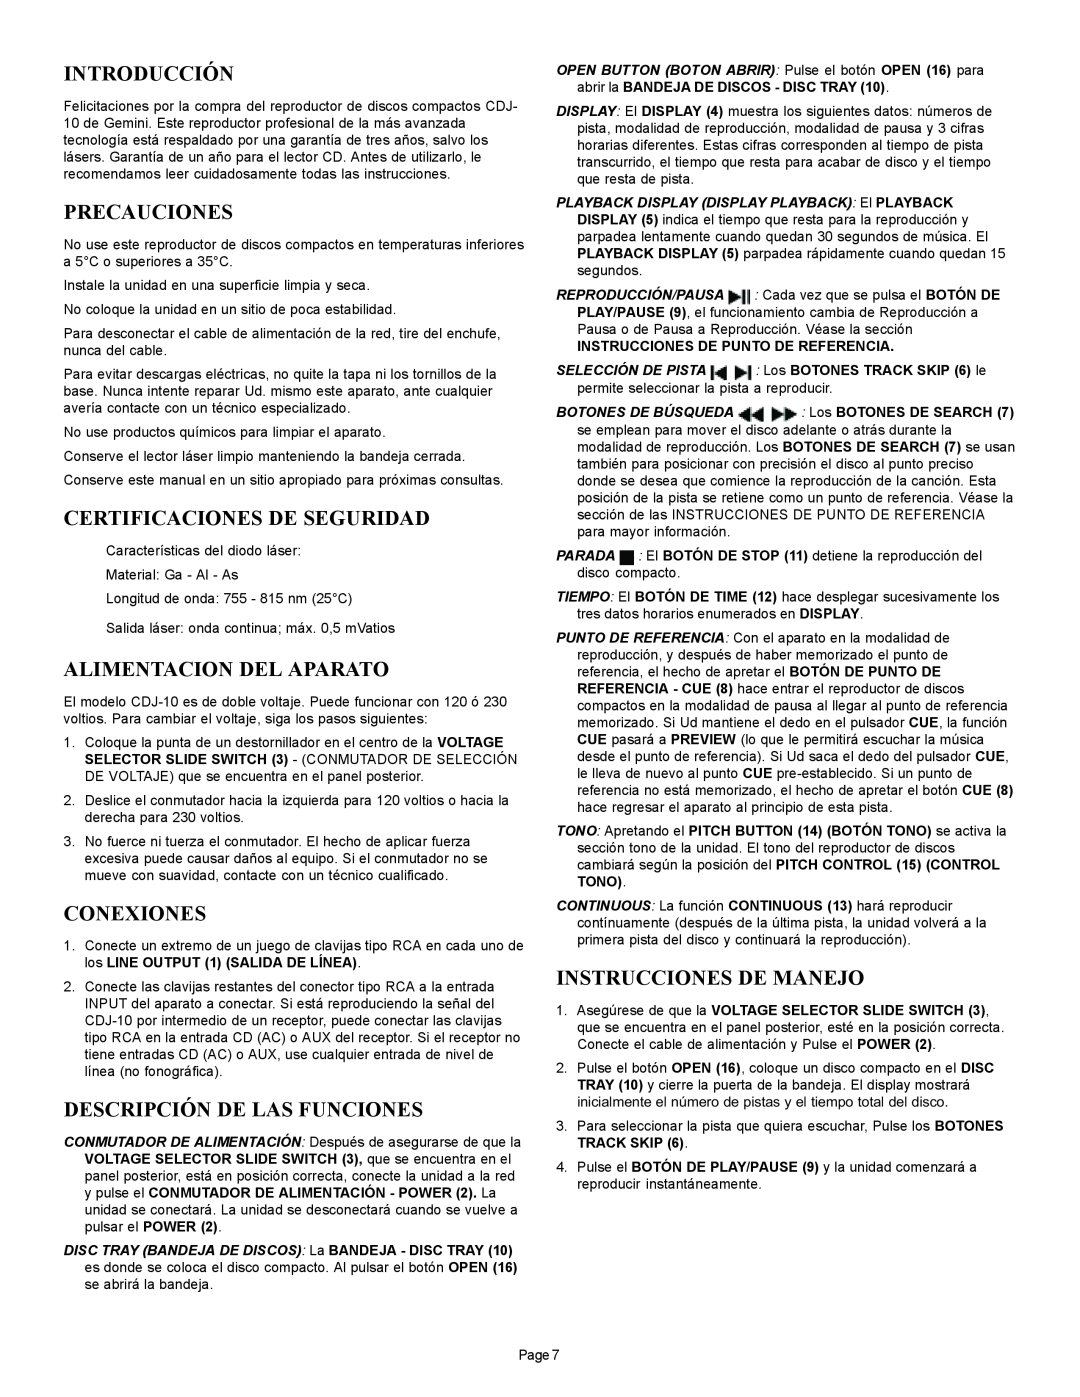 Gemini CDJ-10 manual Introducción, Precauciones, Certificaciones De Seguridad, Alimentacion Del Aparato, Conexiones 